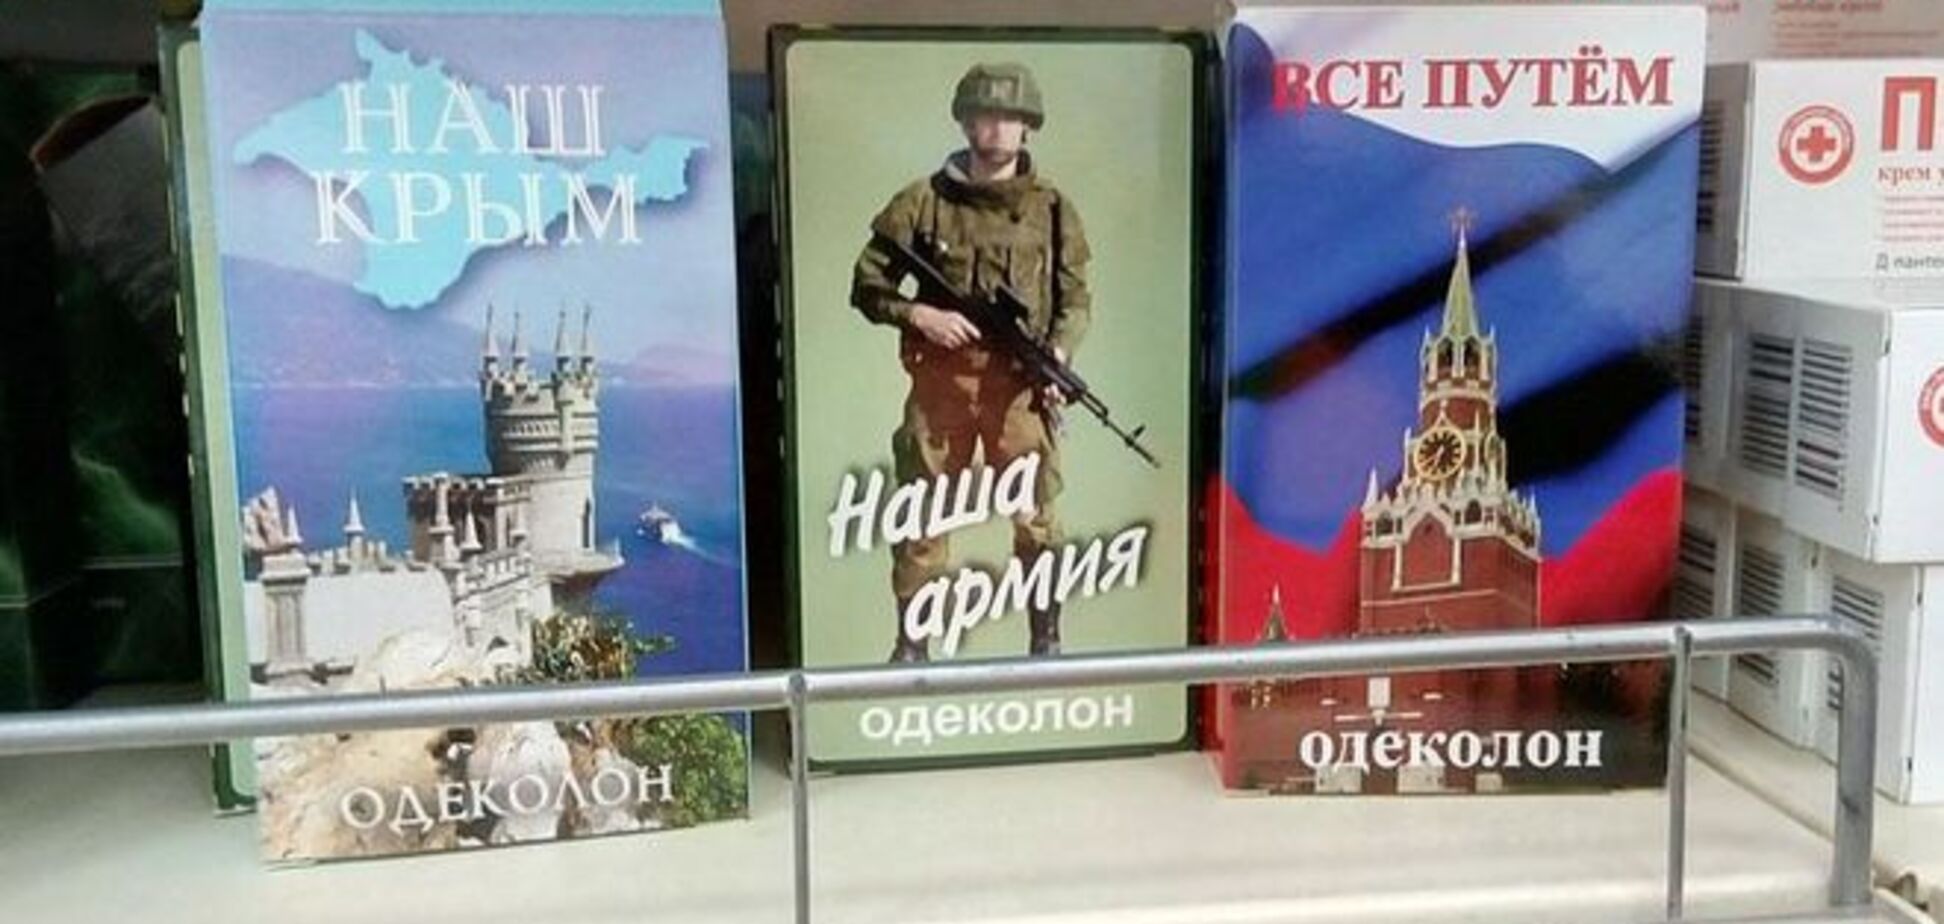 Жителям России предлагают пахнуть 'Нашим Крымом' и армией